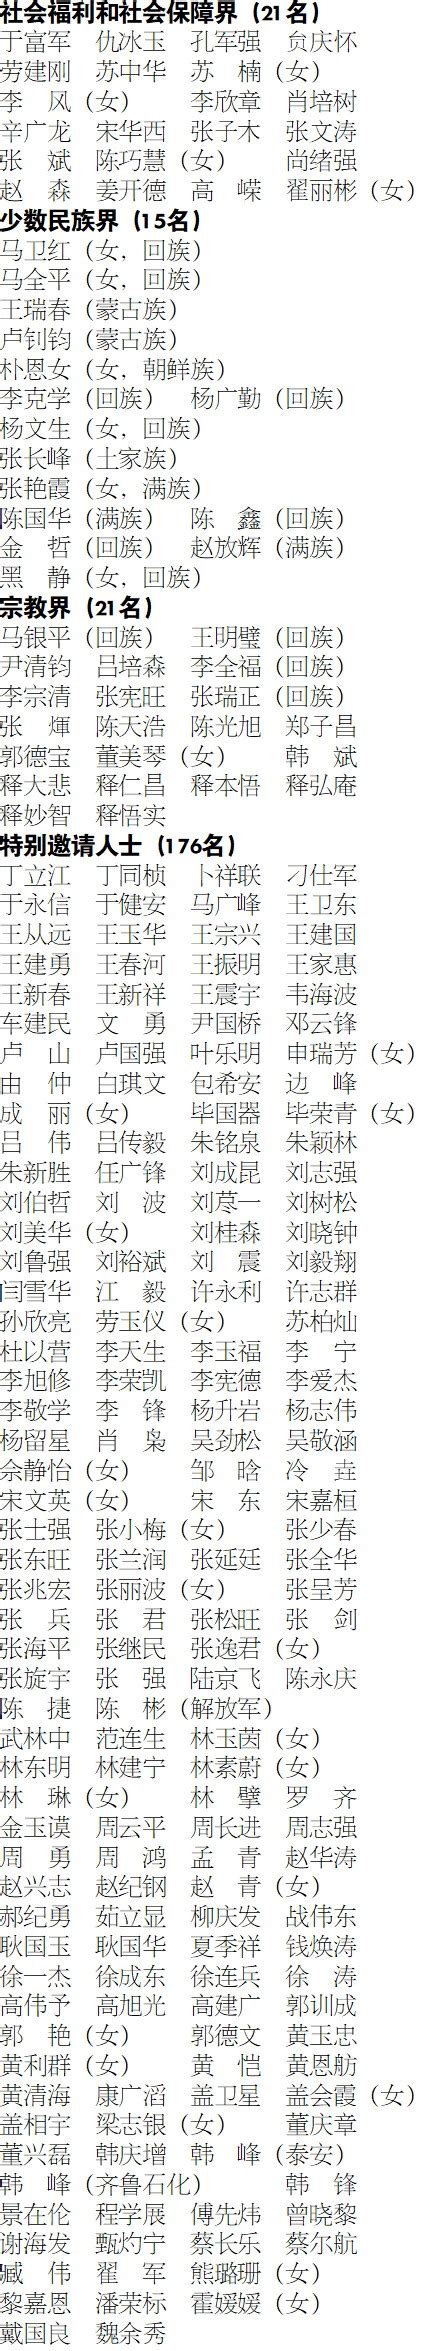 山东省人民政府 今日关注 中国人民政治协商会议山东省第十三届委员会委员名单